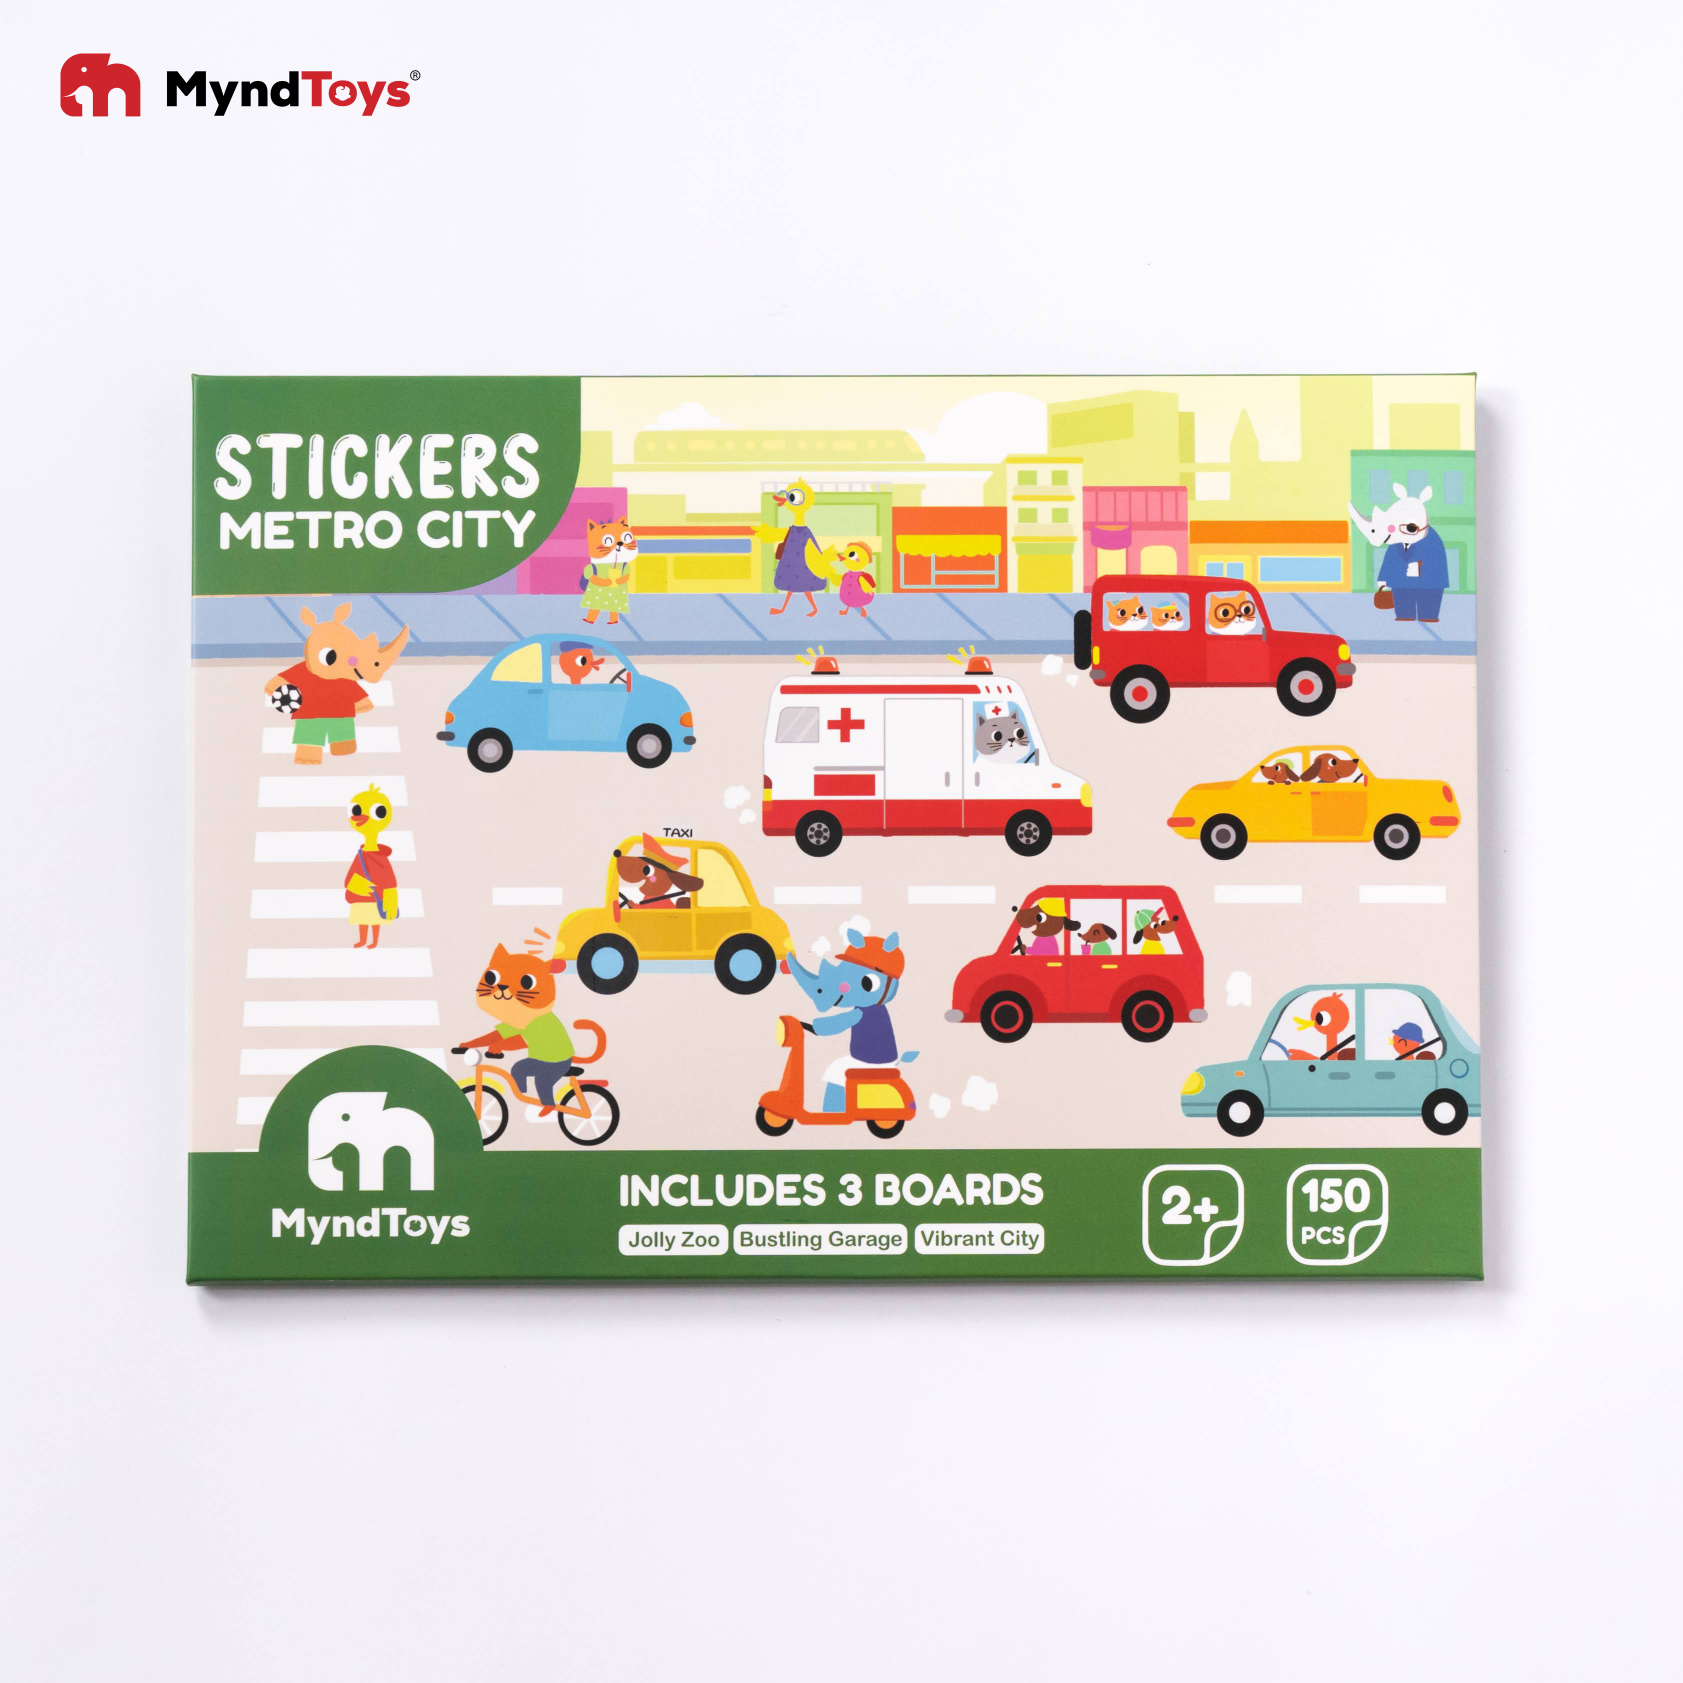 Bộ 150 Hình dán kèm Tranh nền Myndtoys Chủ đề Thành phố Metro City Stickers